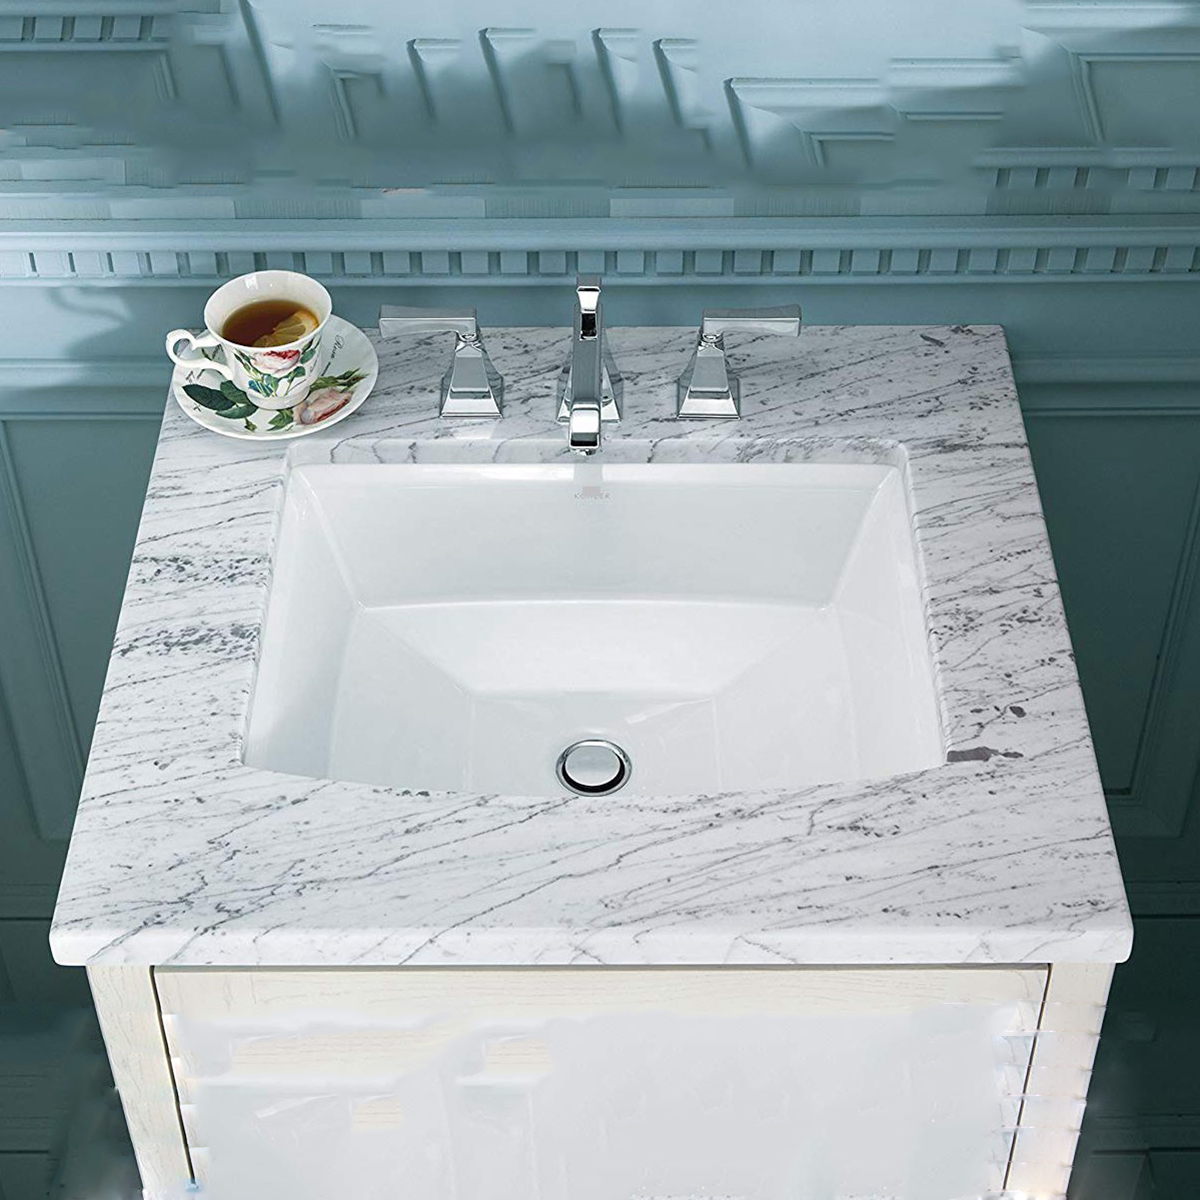 Aquacubic Nowoczesny design Biały zlew do użytku domowego Prostokątna łazienka Ceramiczna umywalka do mycia rąk Undermount Umywalki 